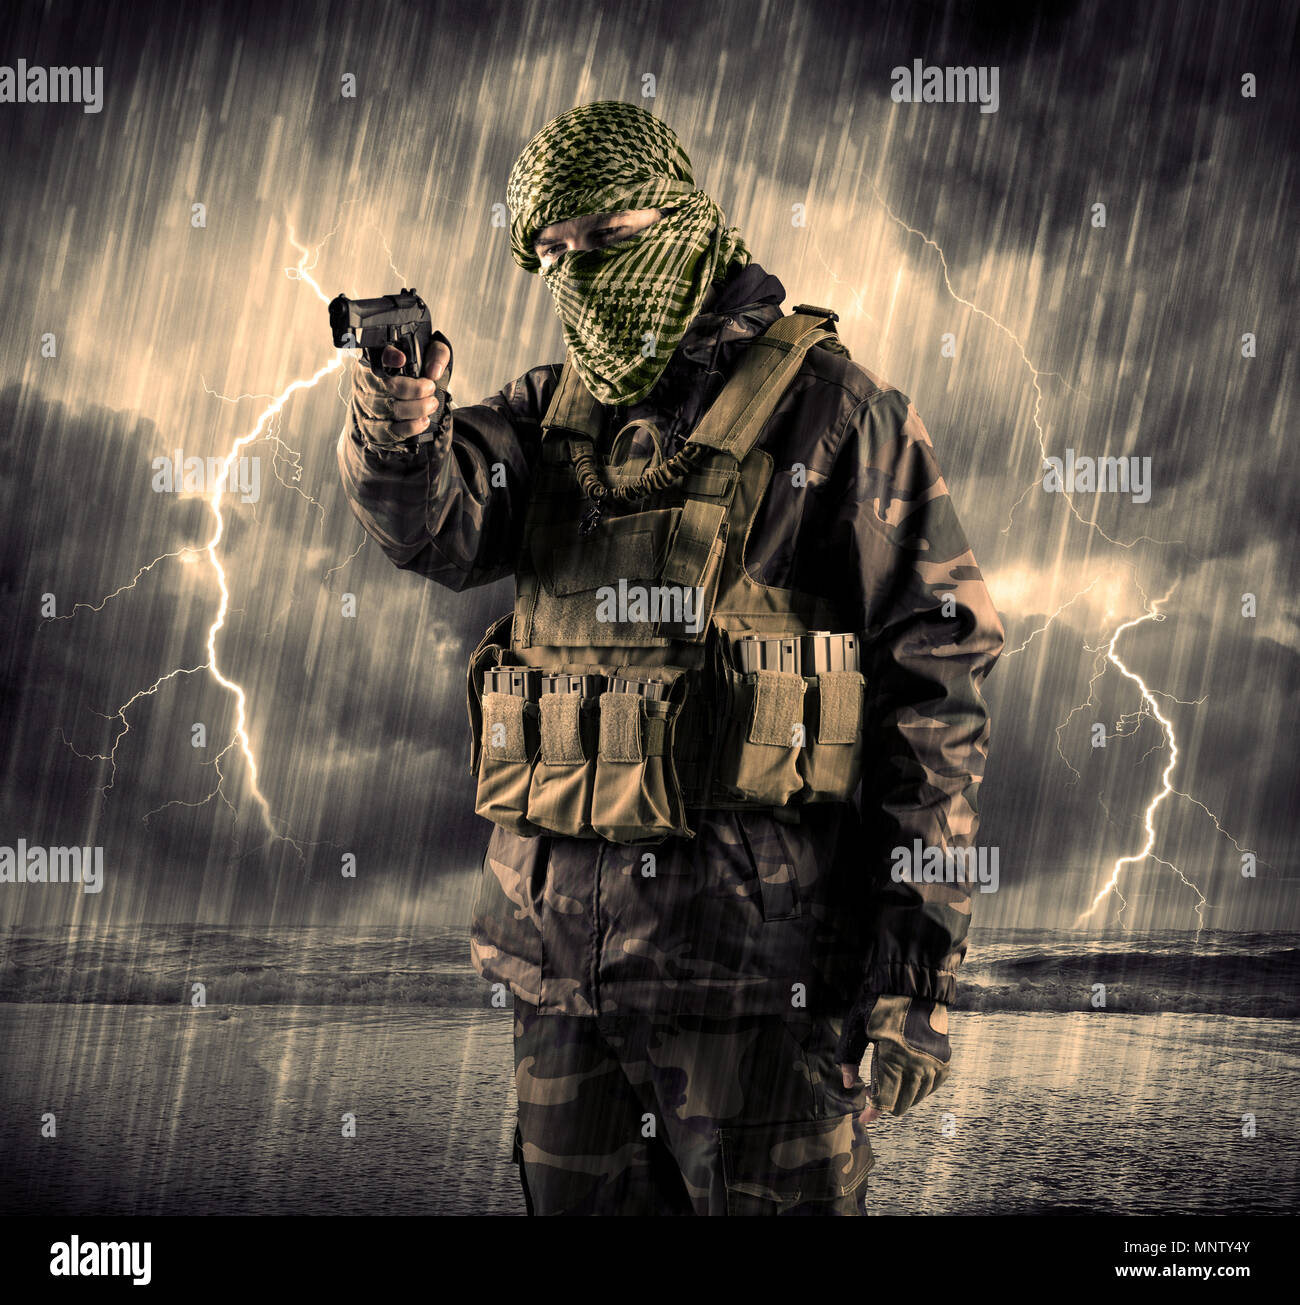 Porträt eines gefährlichen bewaffneten terroristischen mit Maske und Gewehr in ein Gewitter mit Blitz Stockfoto